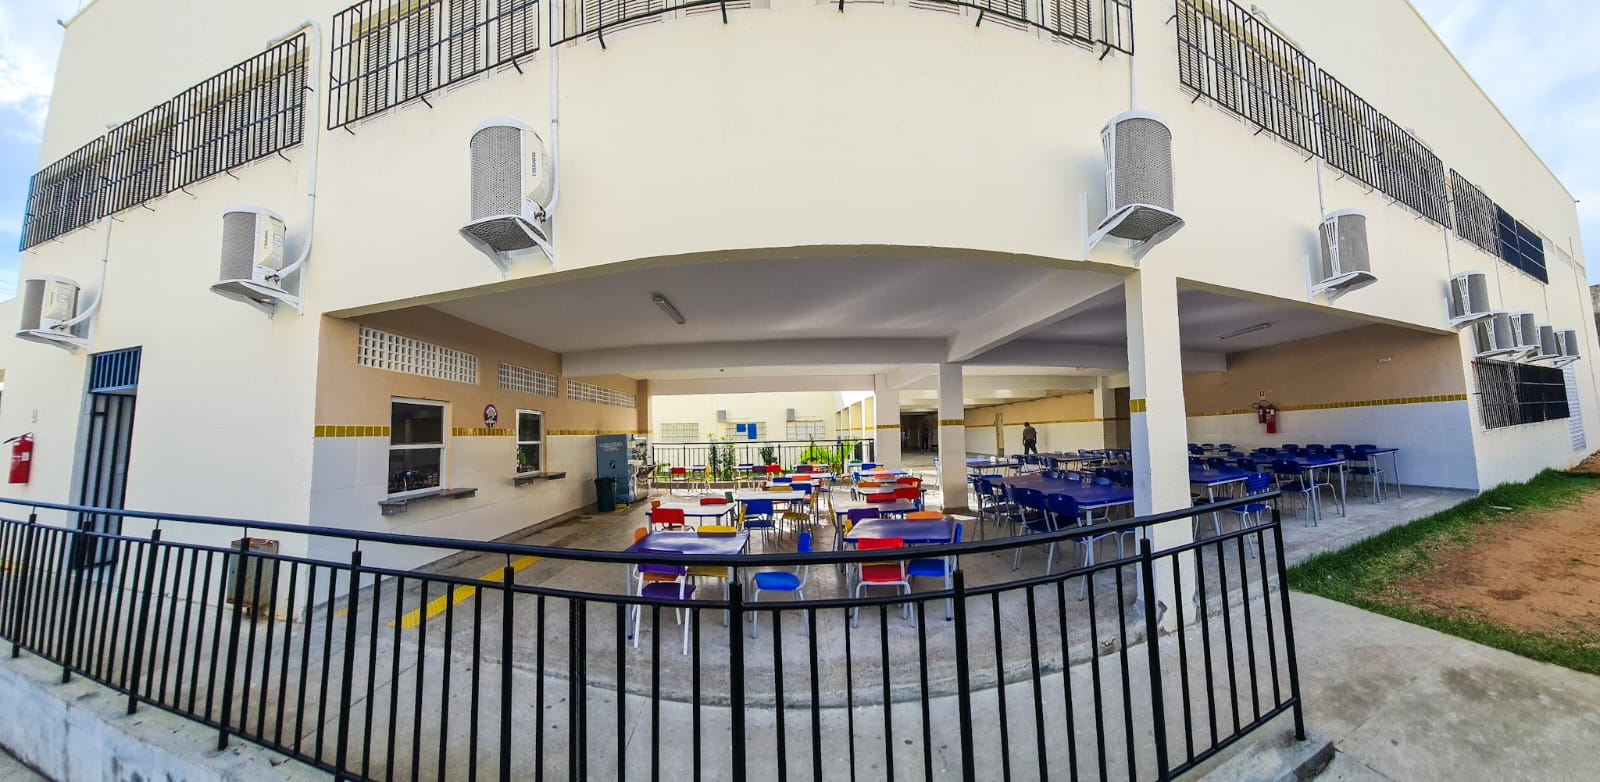 Prefeito inaugura nova sede da Escola Municipal Profª. Zeneide Igino de Moura em Cidade Nova